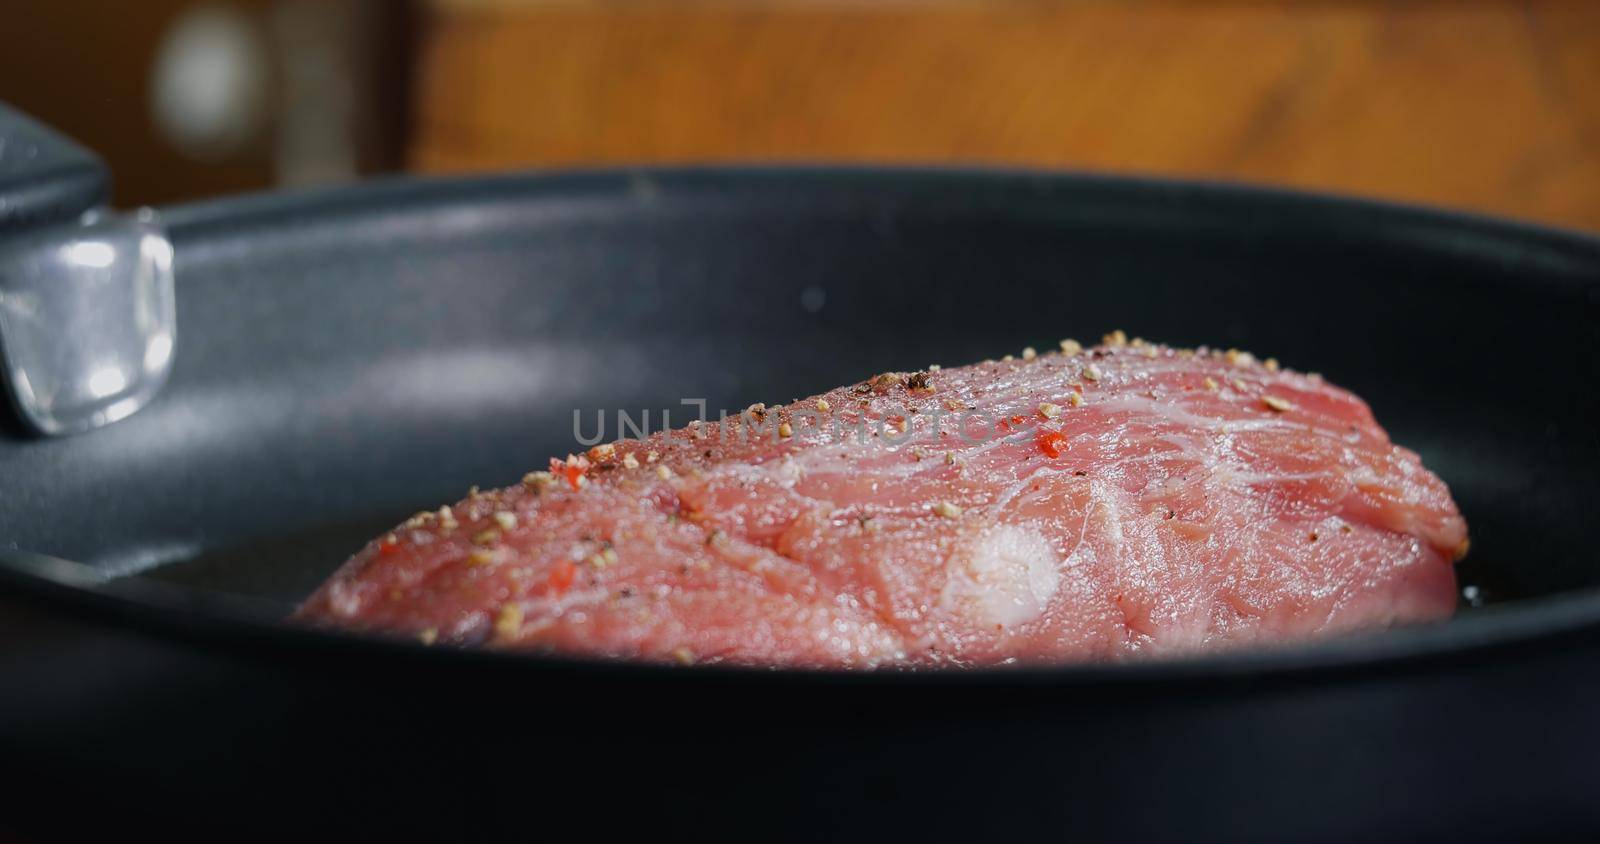 Pork Meat Seasoned is Frying in Hot Pan, Cooking. by RecCameraStock